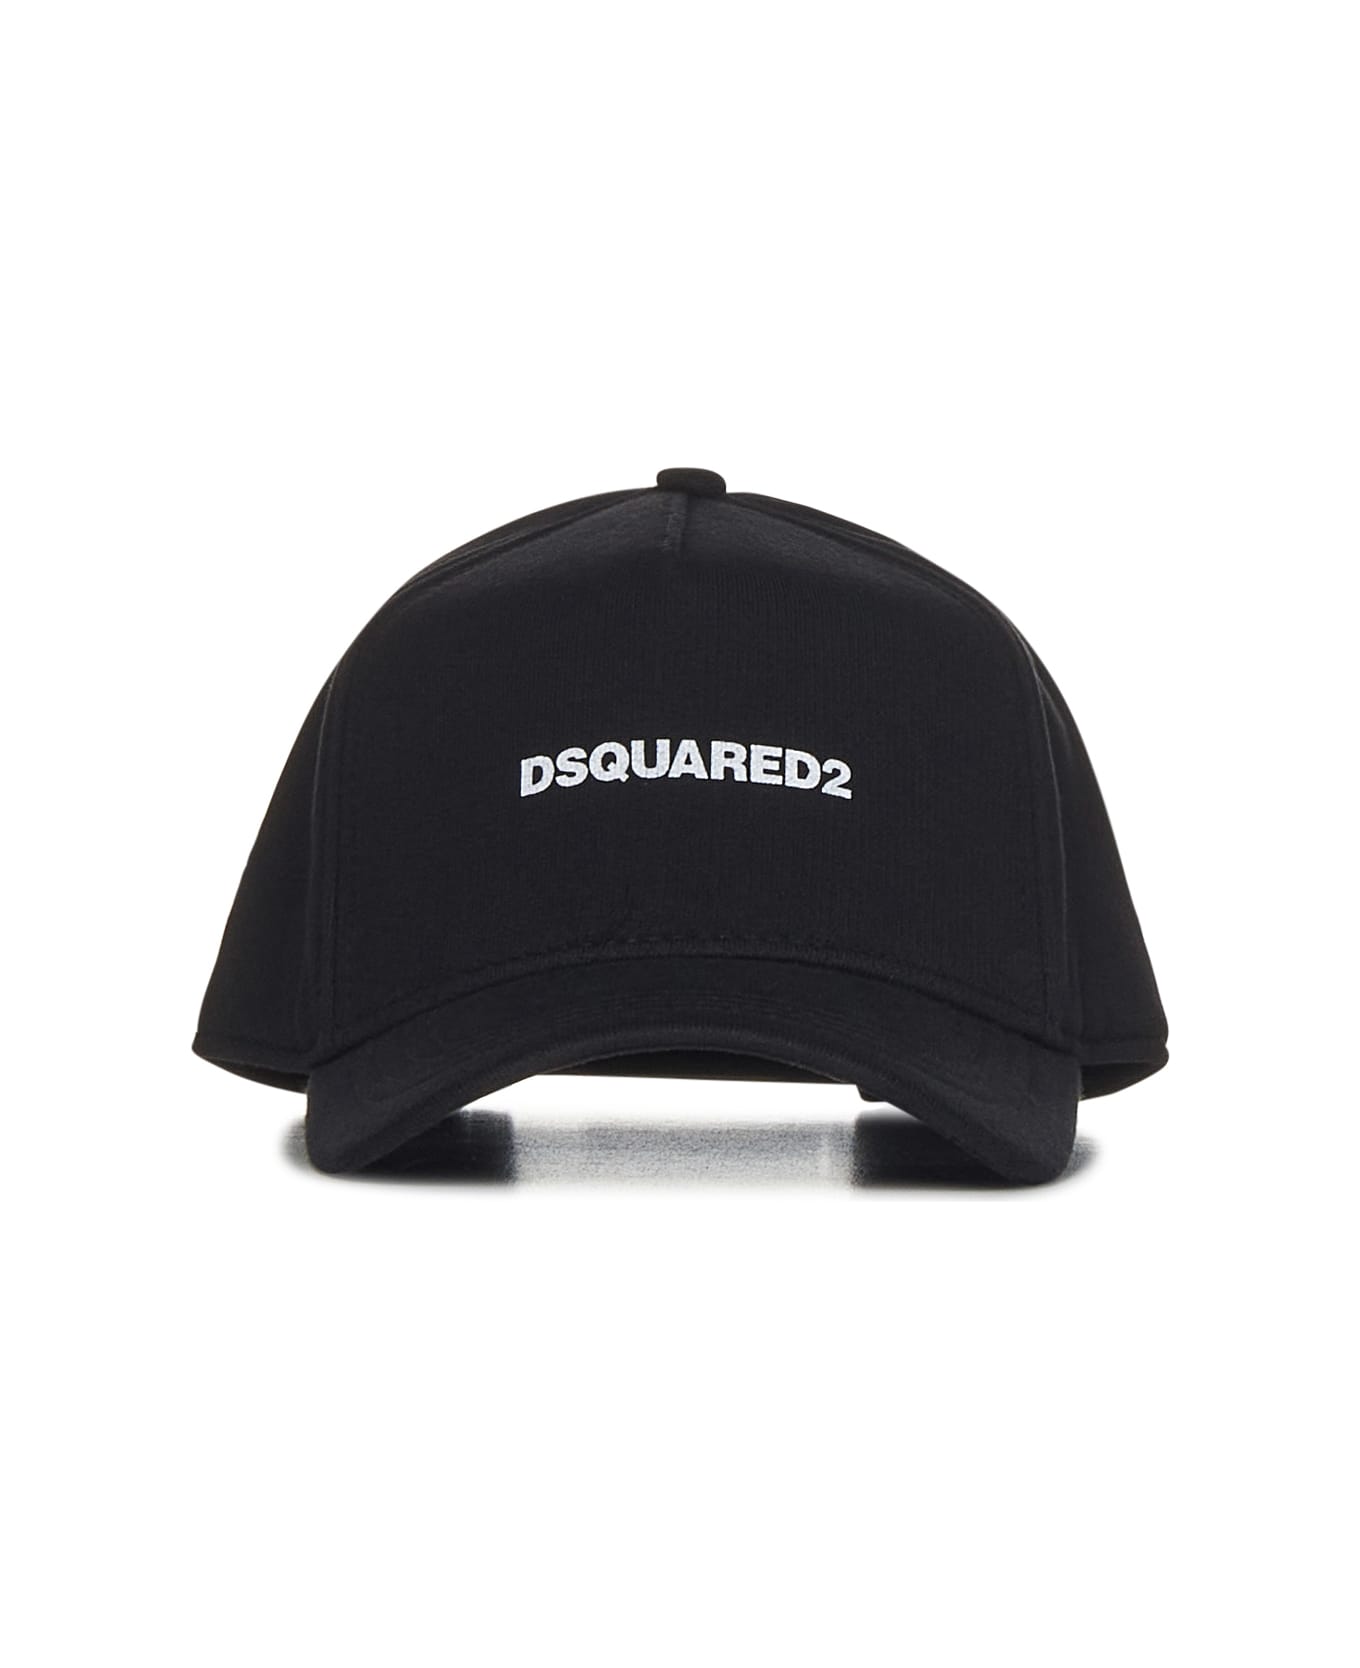 Dsquared2 D2 Baseball Black Baseball Cap - Black 帽子